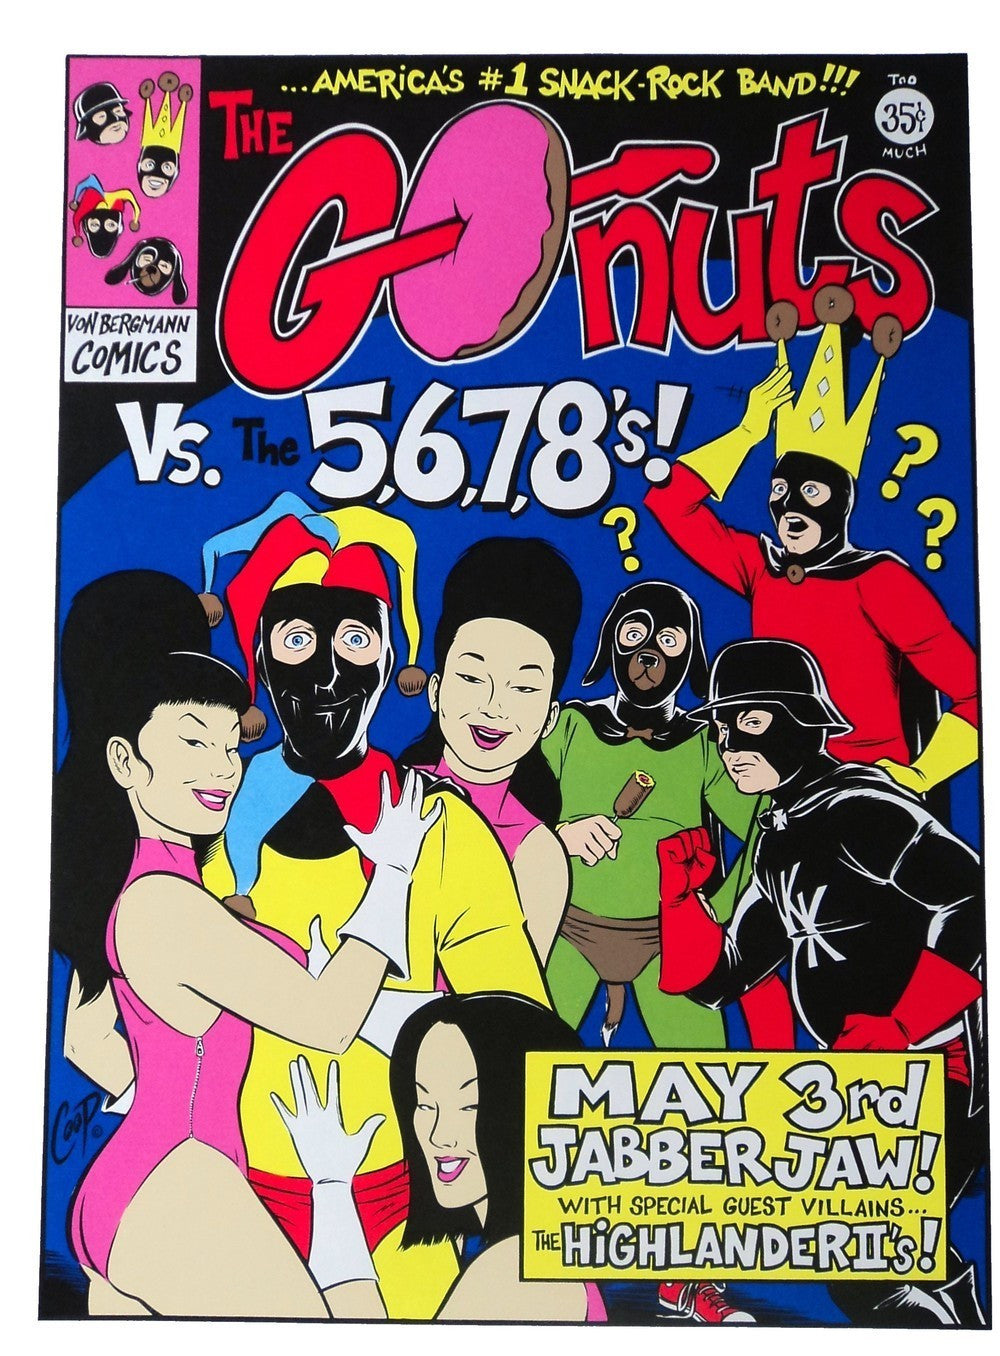 Coop - 1995 - Go-Nuts Concert Poster